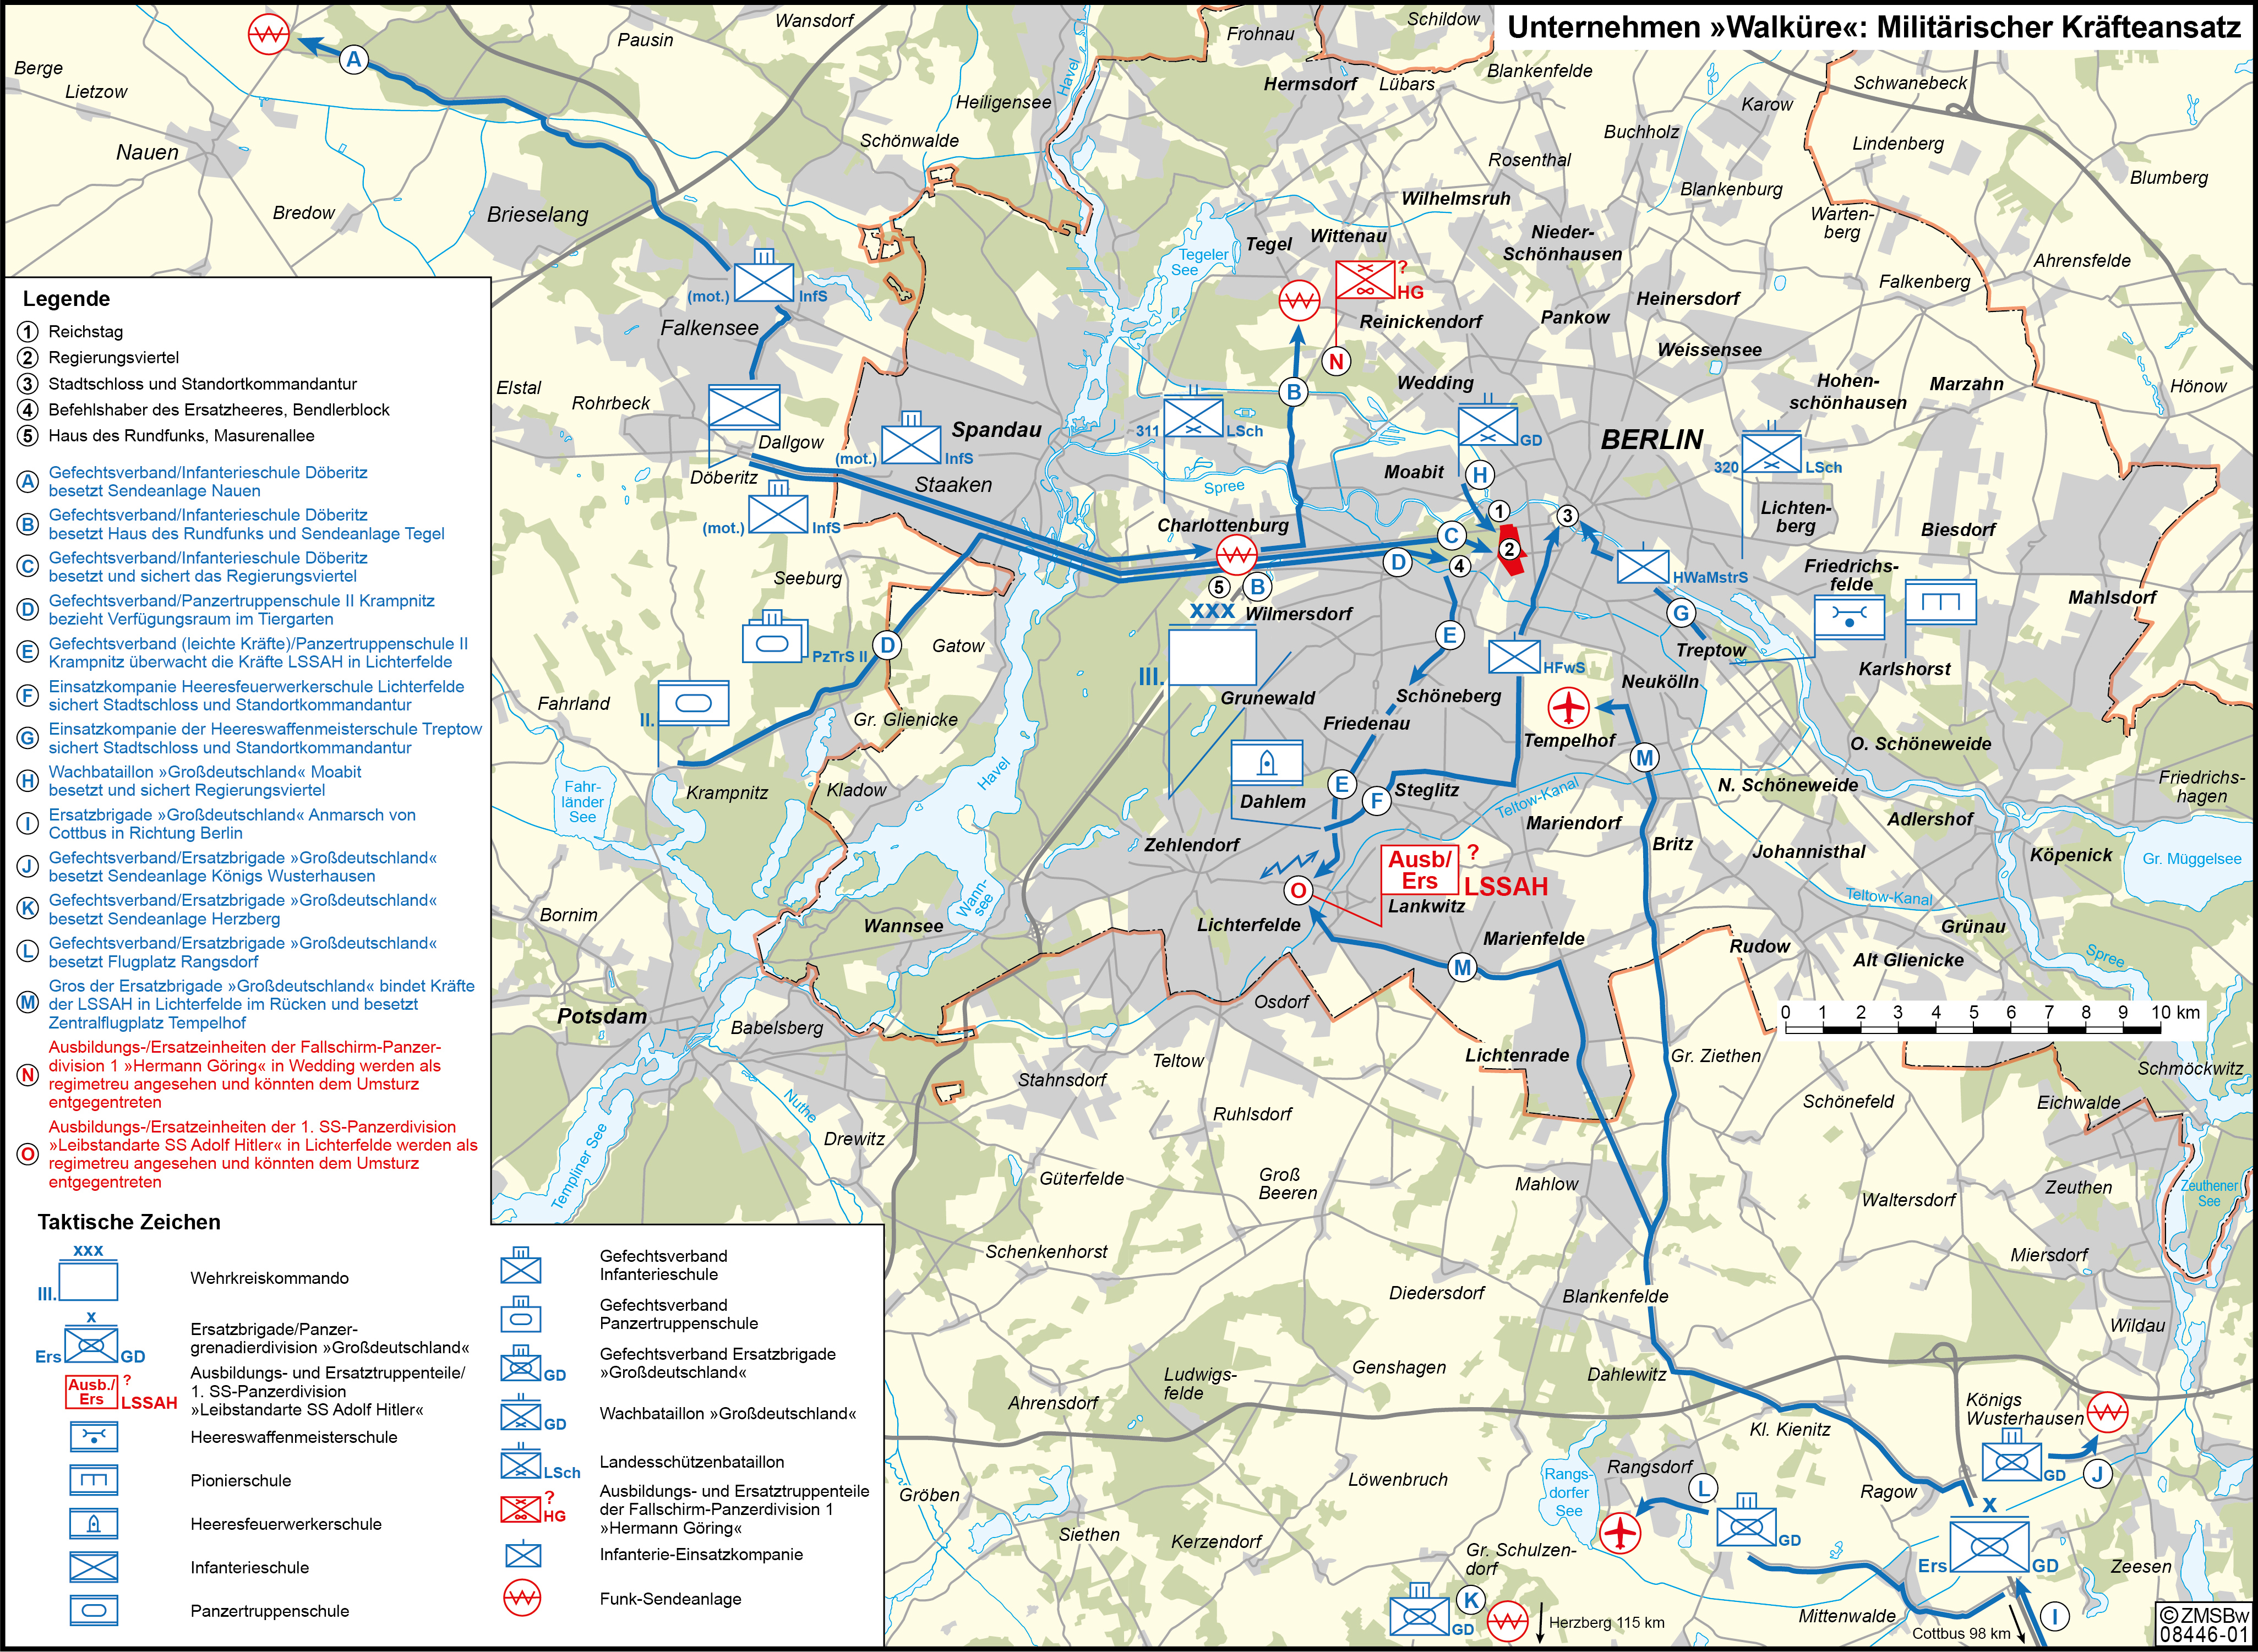 Kartendarstellung der operativen Planungen für das Unternehmen "Walküre" in BErlin